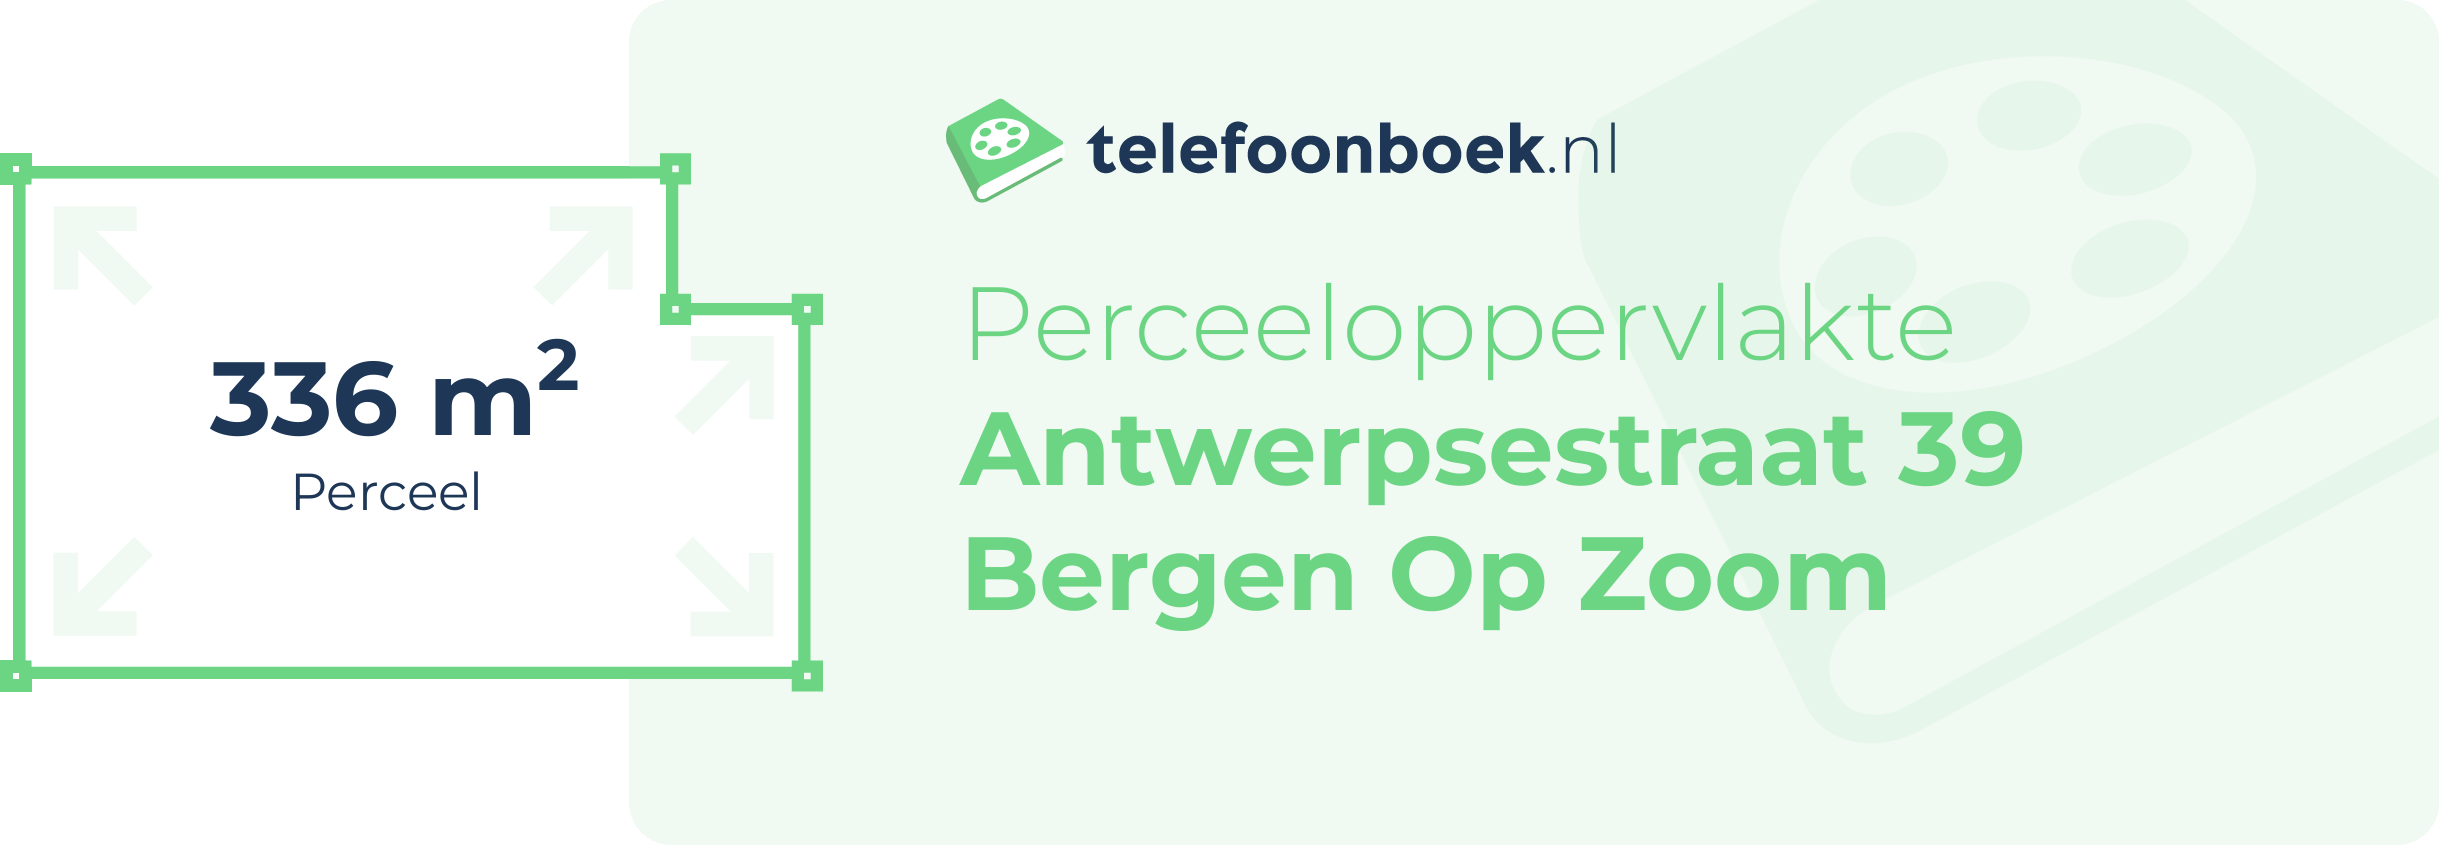 Perceeloppervlakte Antwerpsestraat 39 Bergen Op Zoom